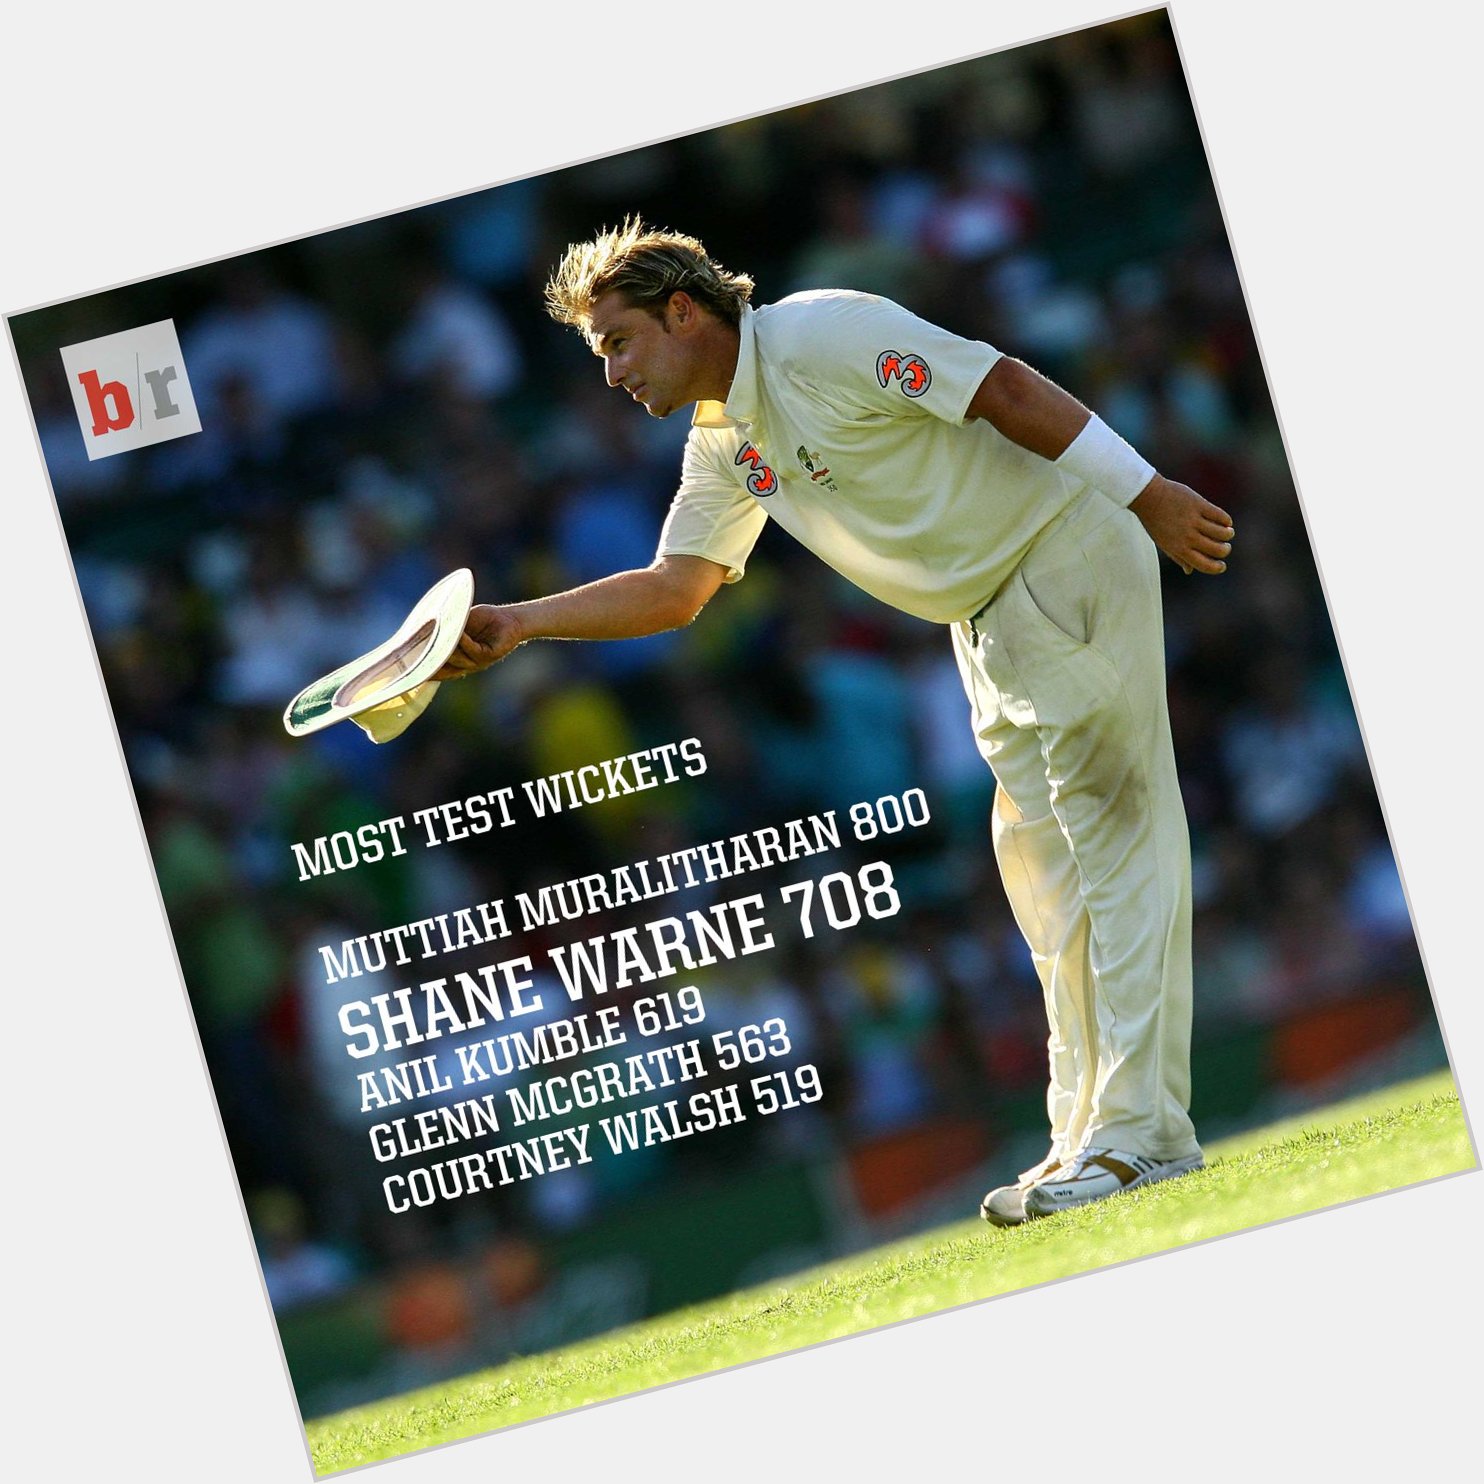 Happy 46th birthday Shane Warne! A true cricketing legend... 